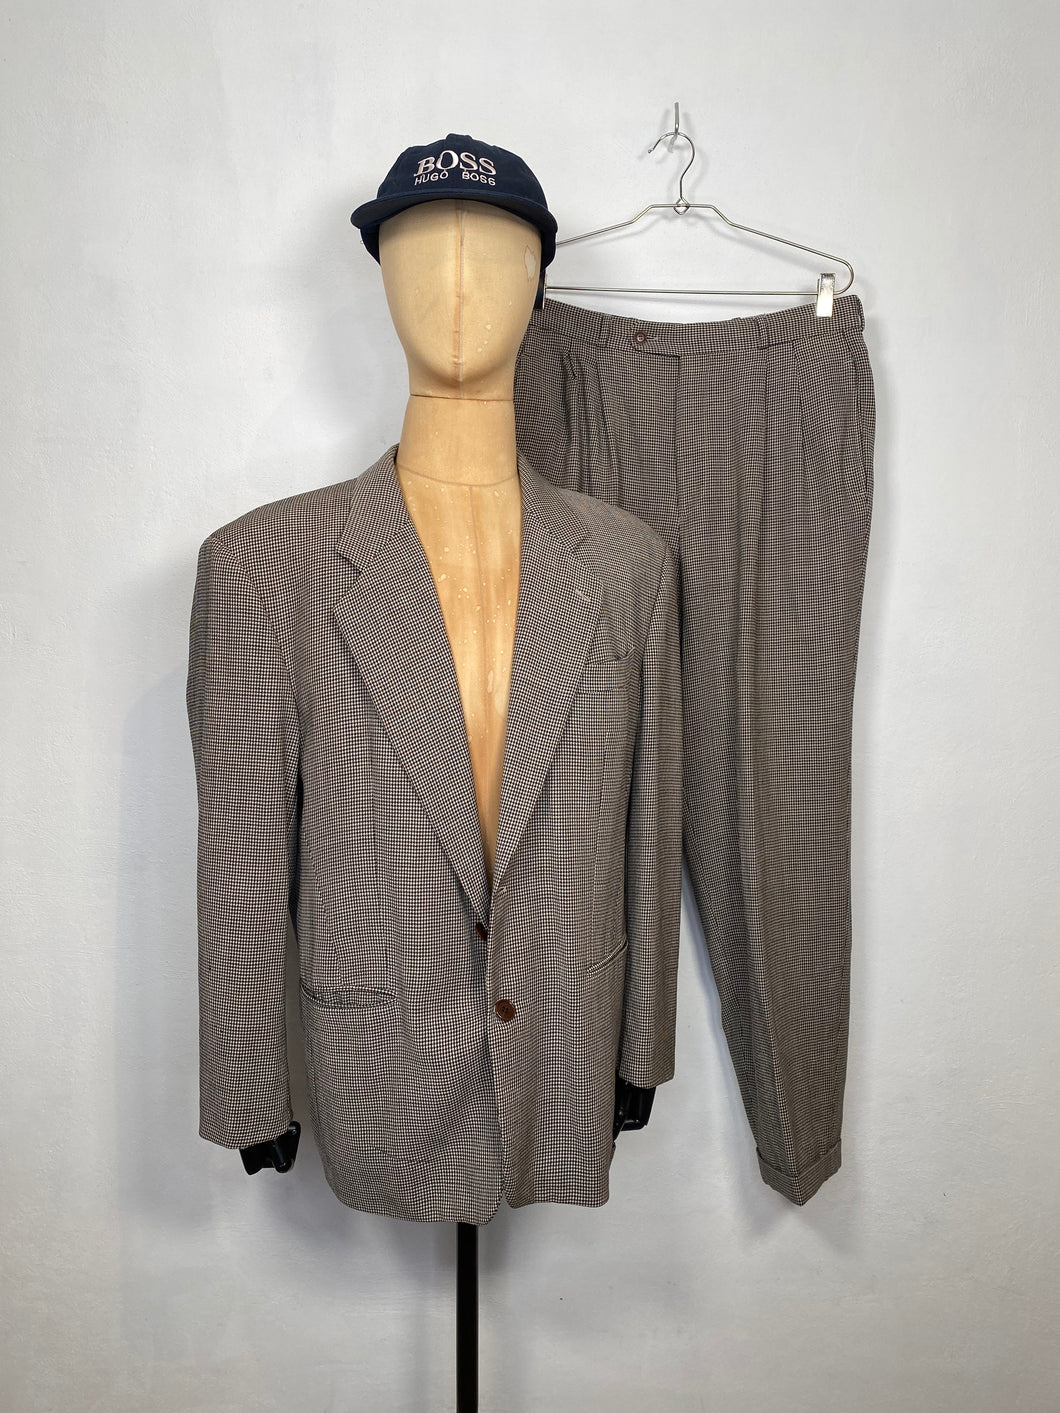 1980s Hugo Boss houndstooth suit